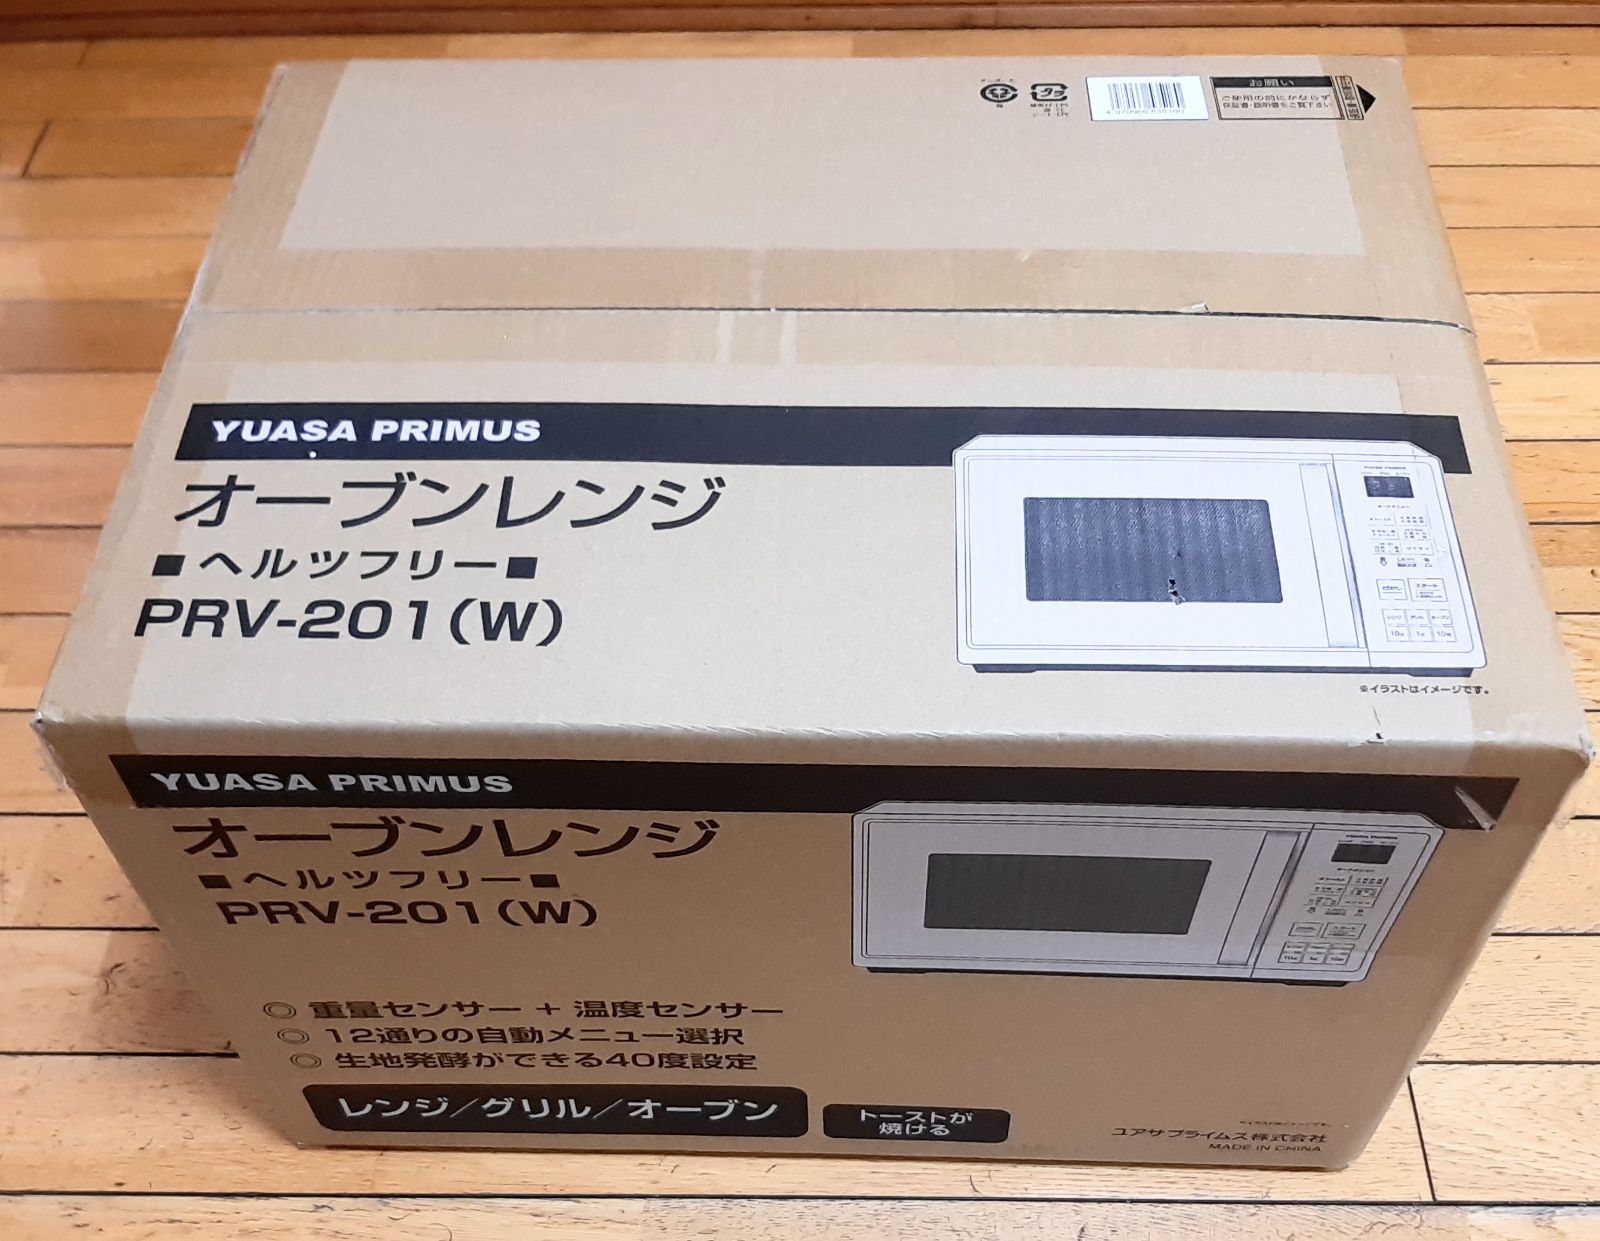 YUASA PRV-201 Wユアサプライムスオーブンレンジ 電子レンジ - 生活家電